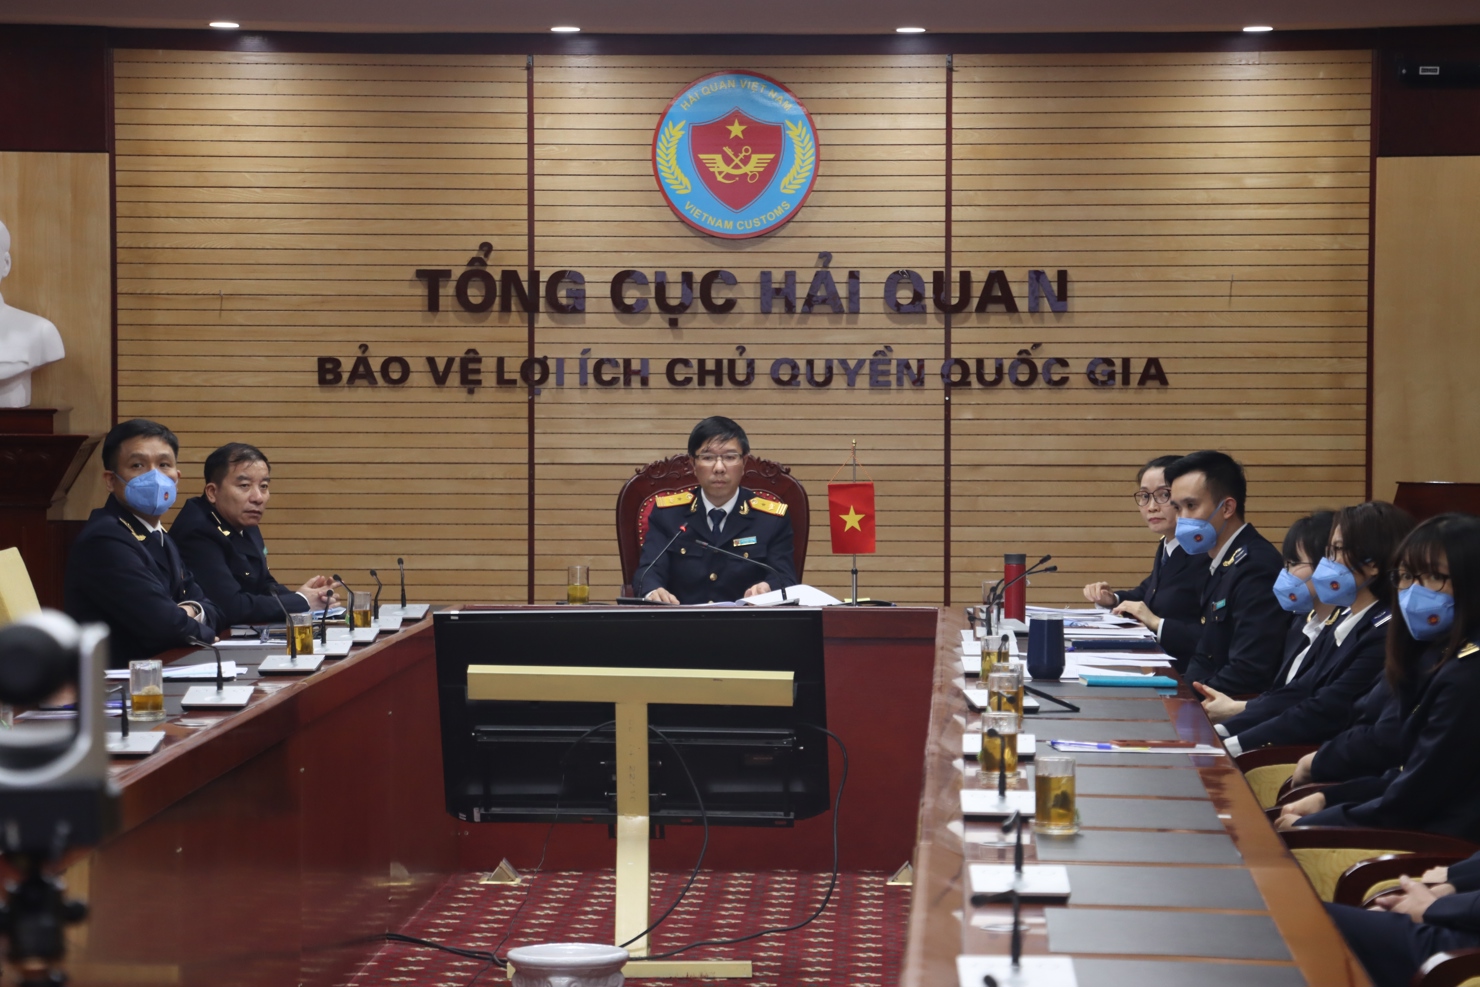 Phó Tổng cục trưởng Tổng cục Hải quan Lưu Mạnh Tưởng phát biểu tại sự kiện. 